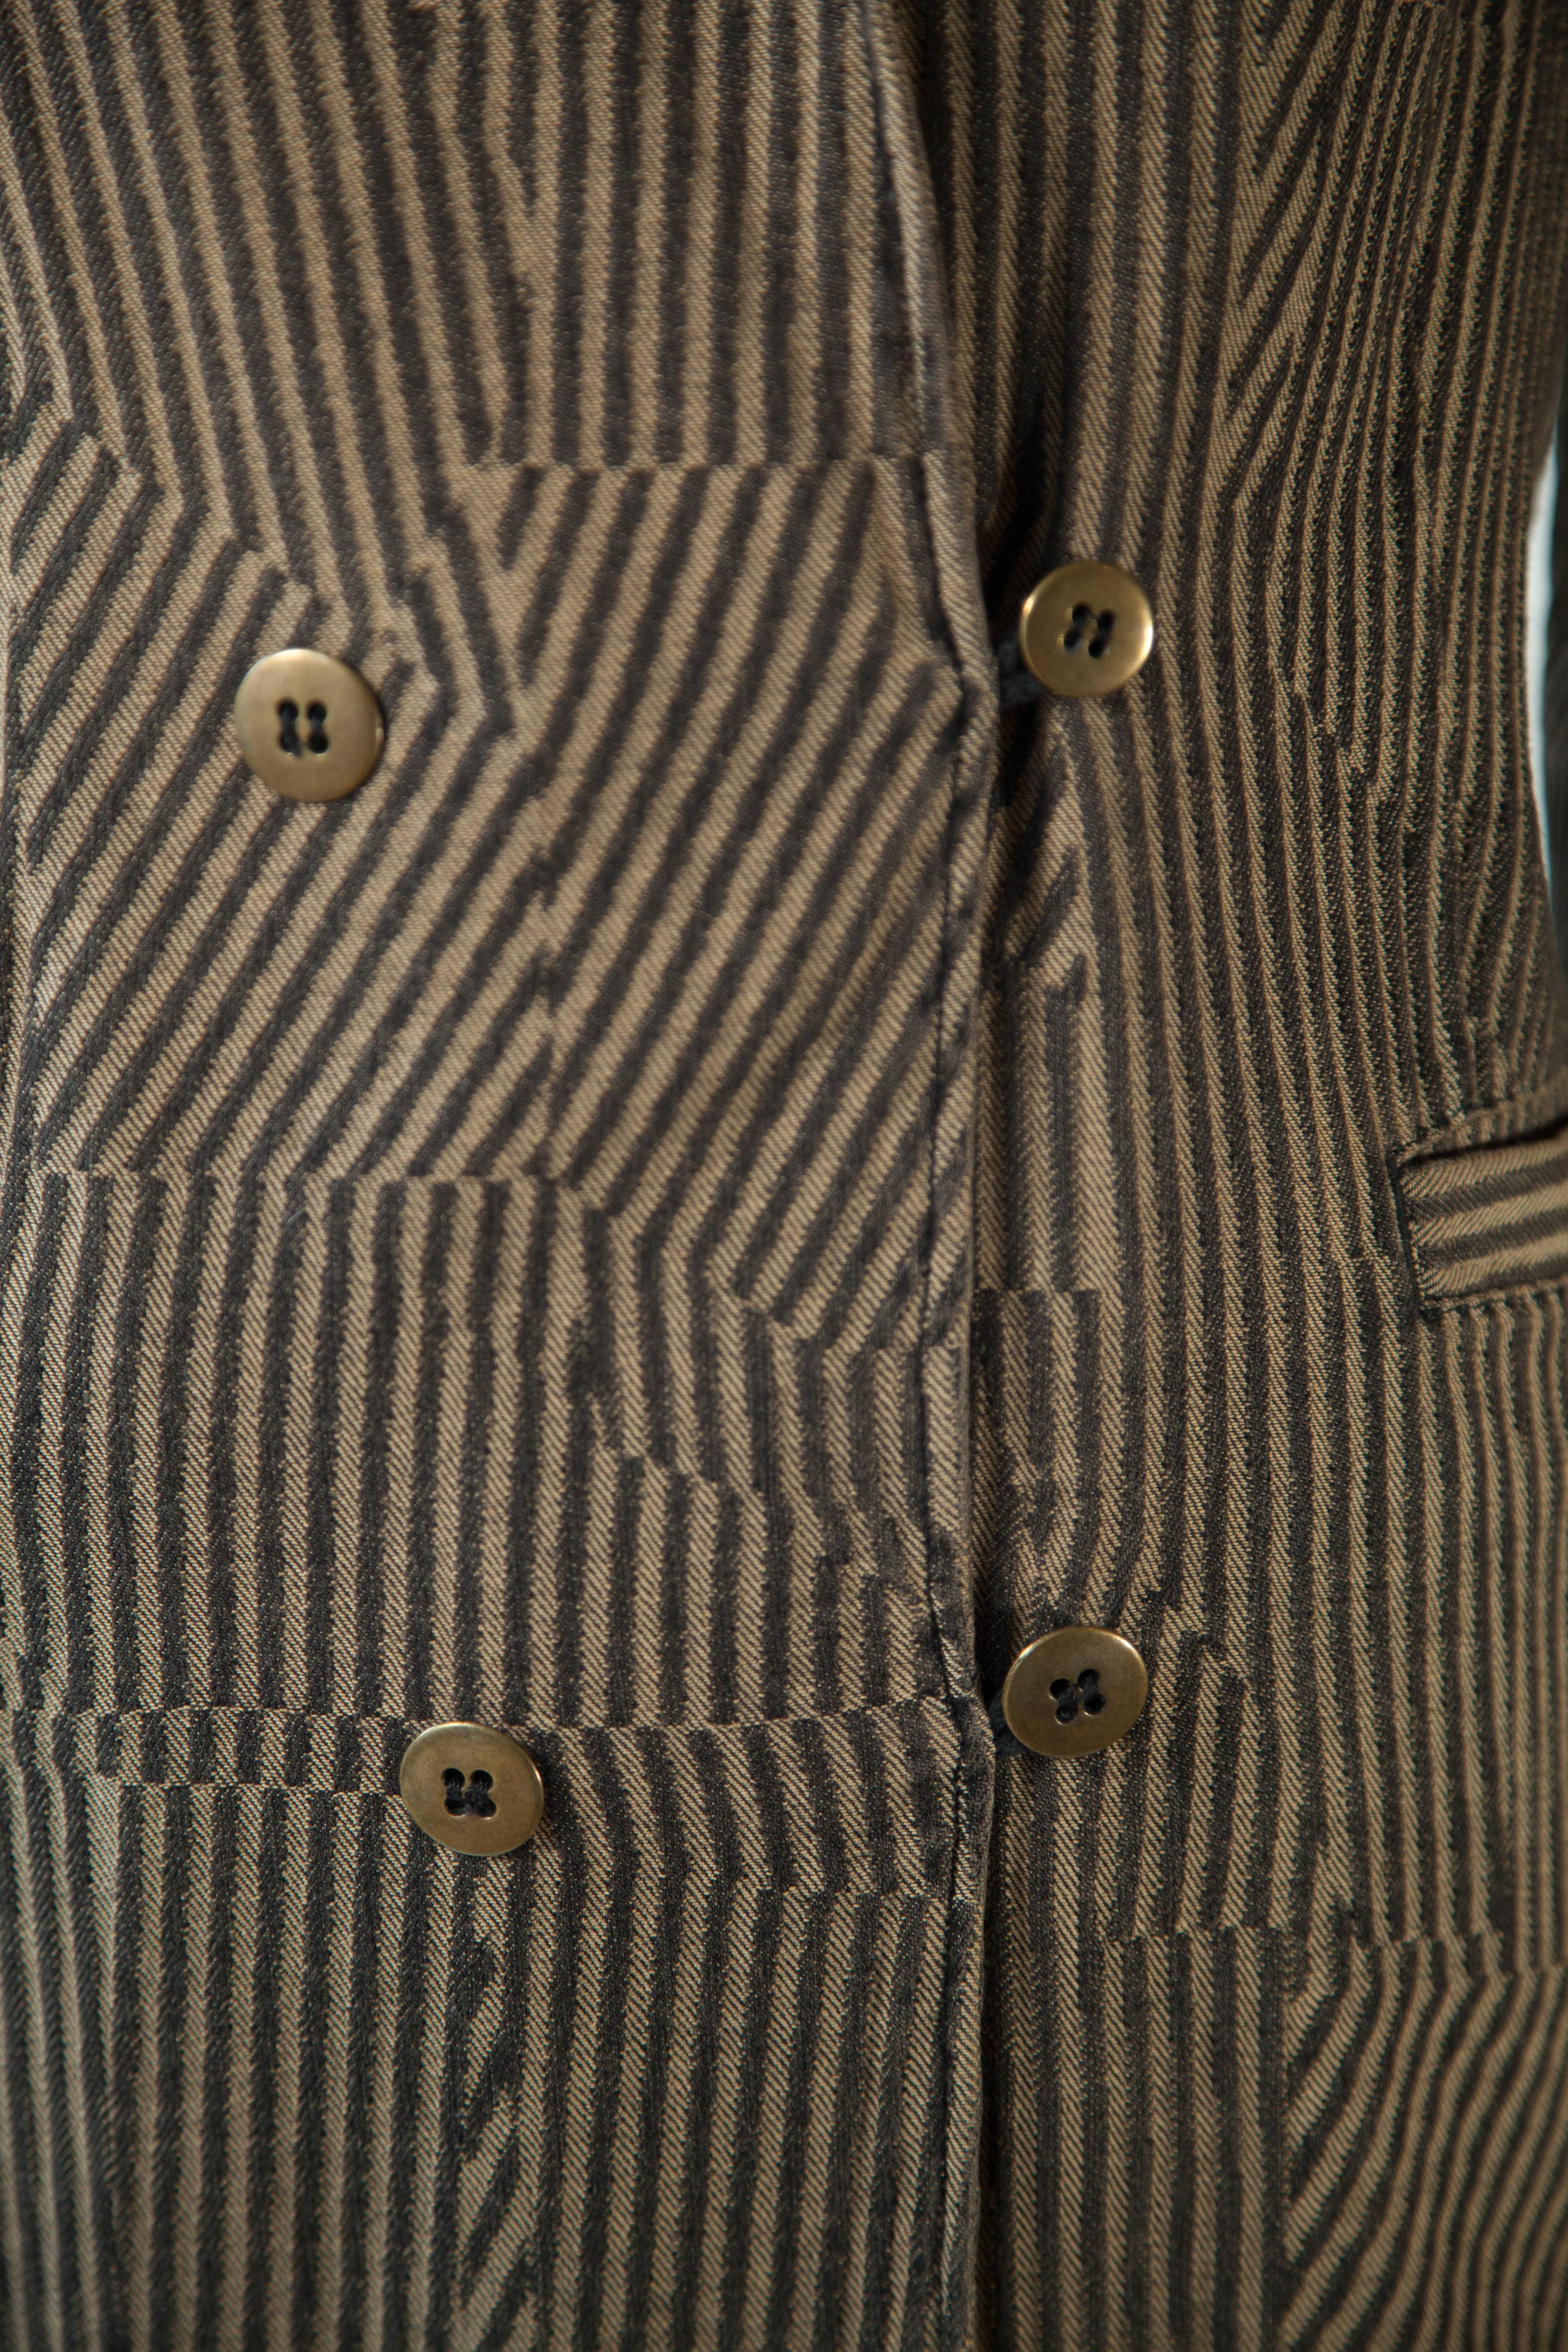 Cette veste classique de Maison Margiela est confectionnée de manière experte en 100 % coton et présente une illusion accrocheuse de rayures noires et marron allant dans des sens différents. Conçu avec une silhouette ajustée intemporelle, un col